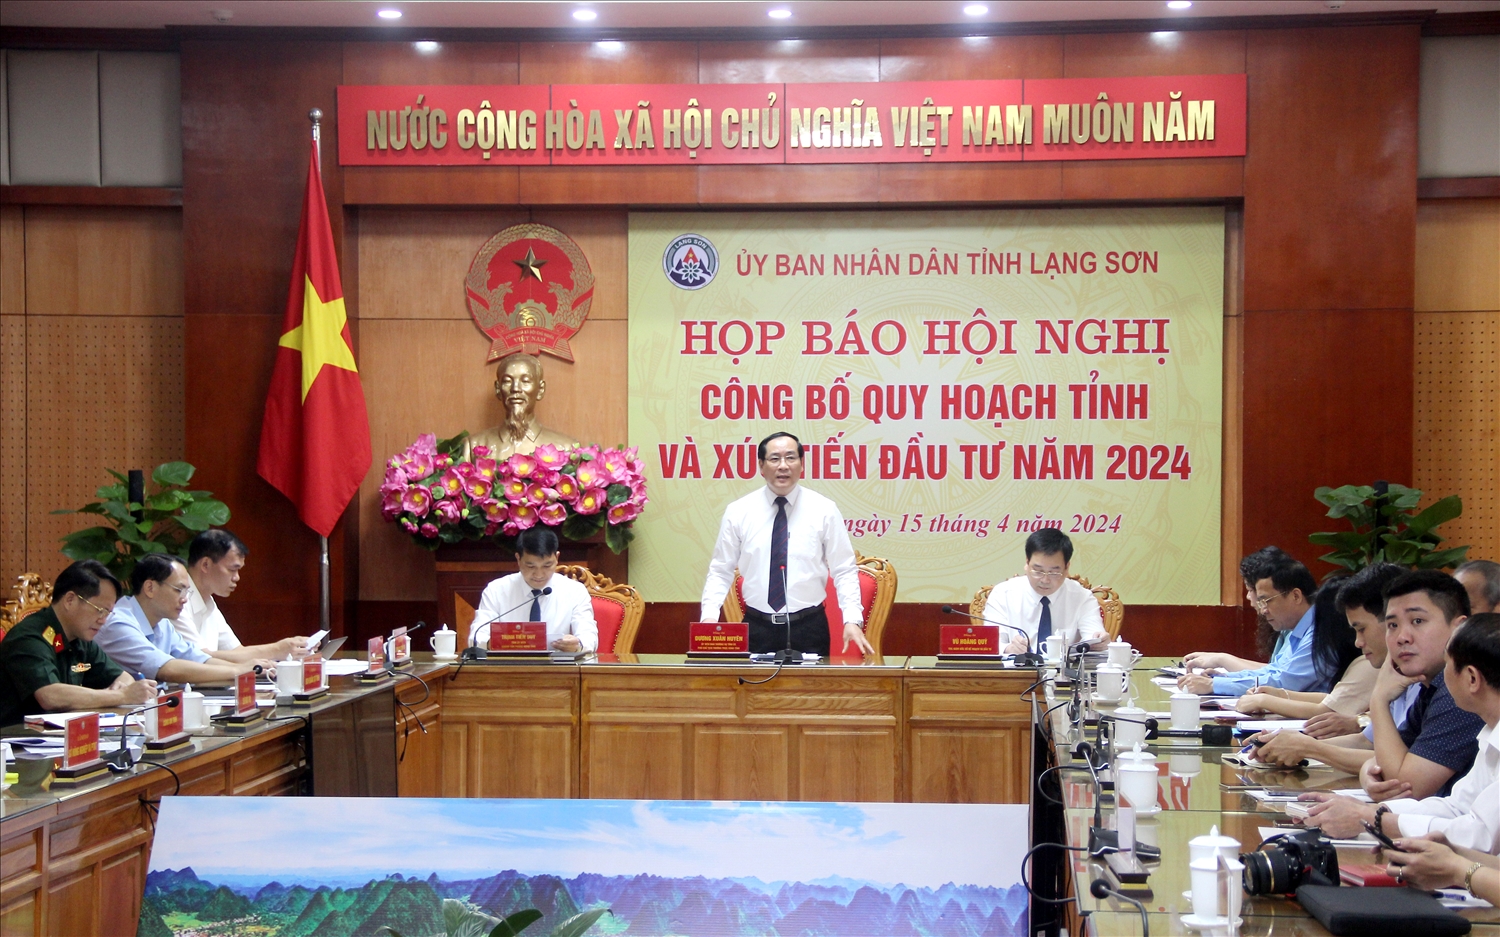 Ông Dương Xuân Huyên, Phó Chủ tịch Thường trực UBND tỉnh Lạng Sơn phát biểu tại cuộc họp báo